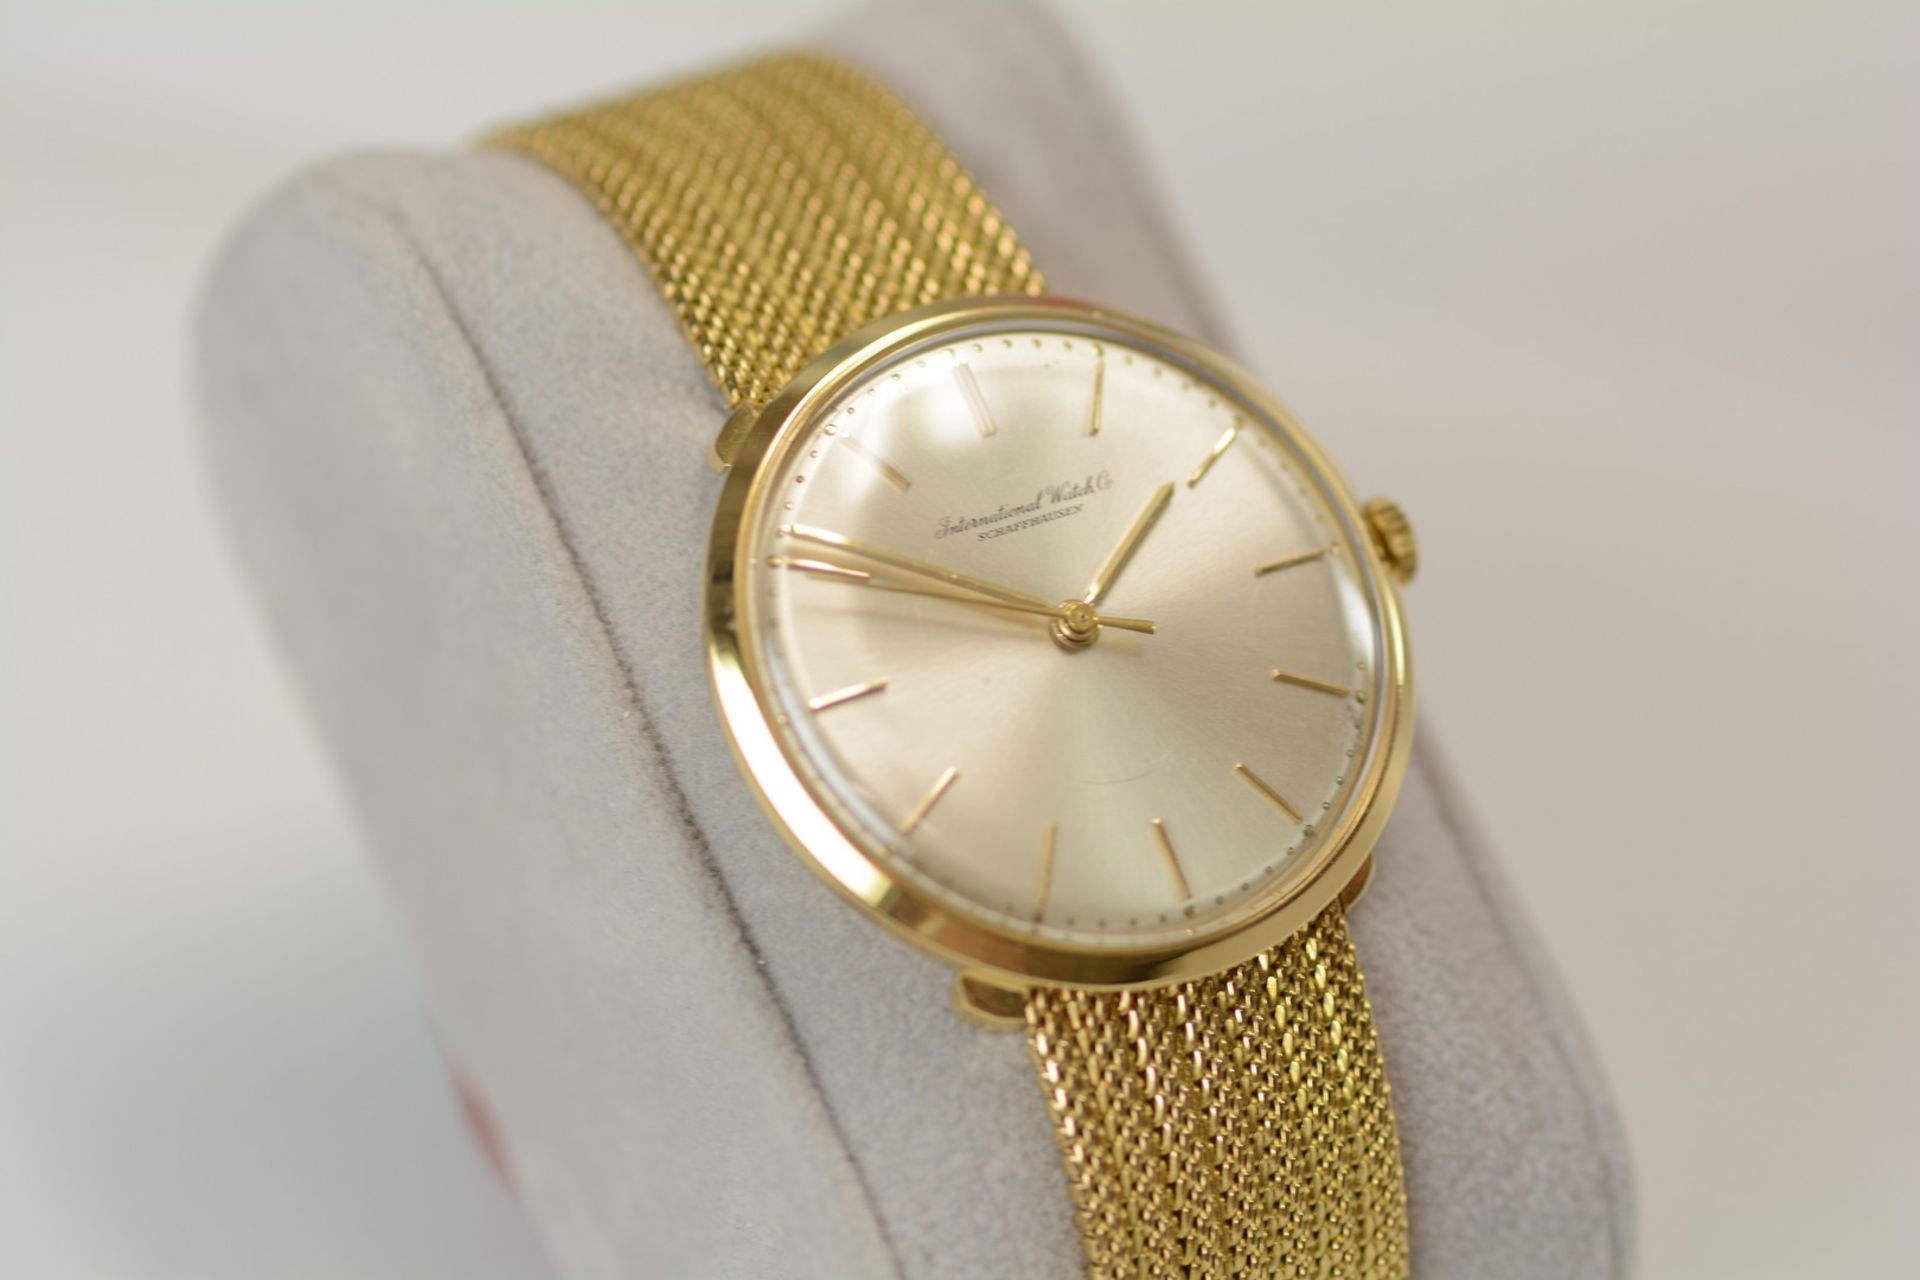 IWC / Schaffhausen - Gentlemen's Yellow Gold Wristwatch - Image 2 of 9